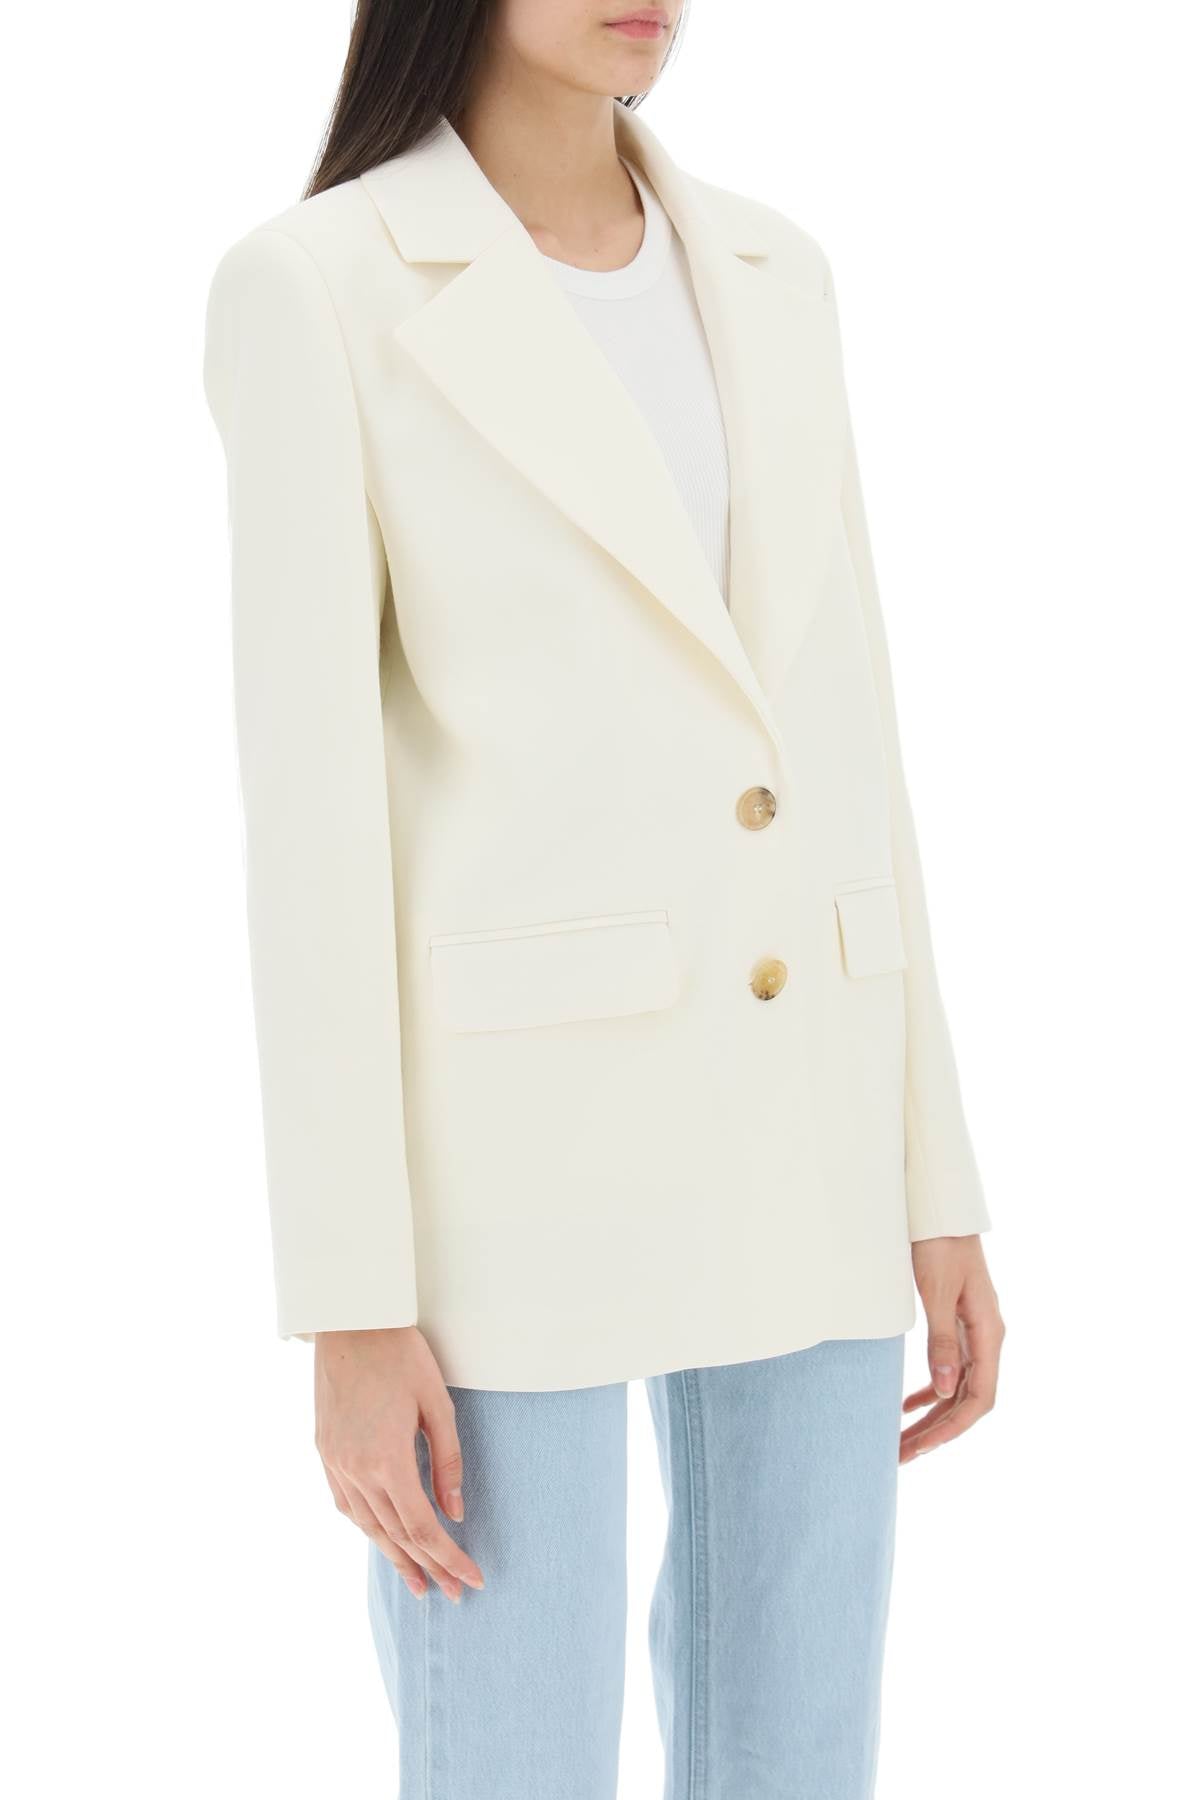 Mvp wardrobe 'coronado' jacket-1